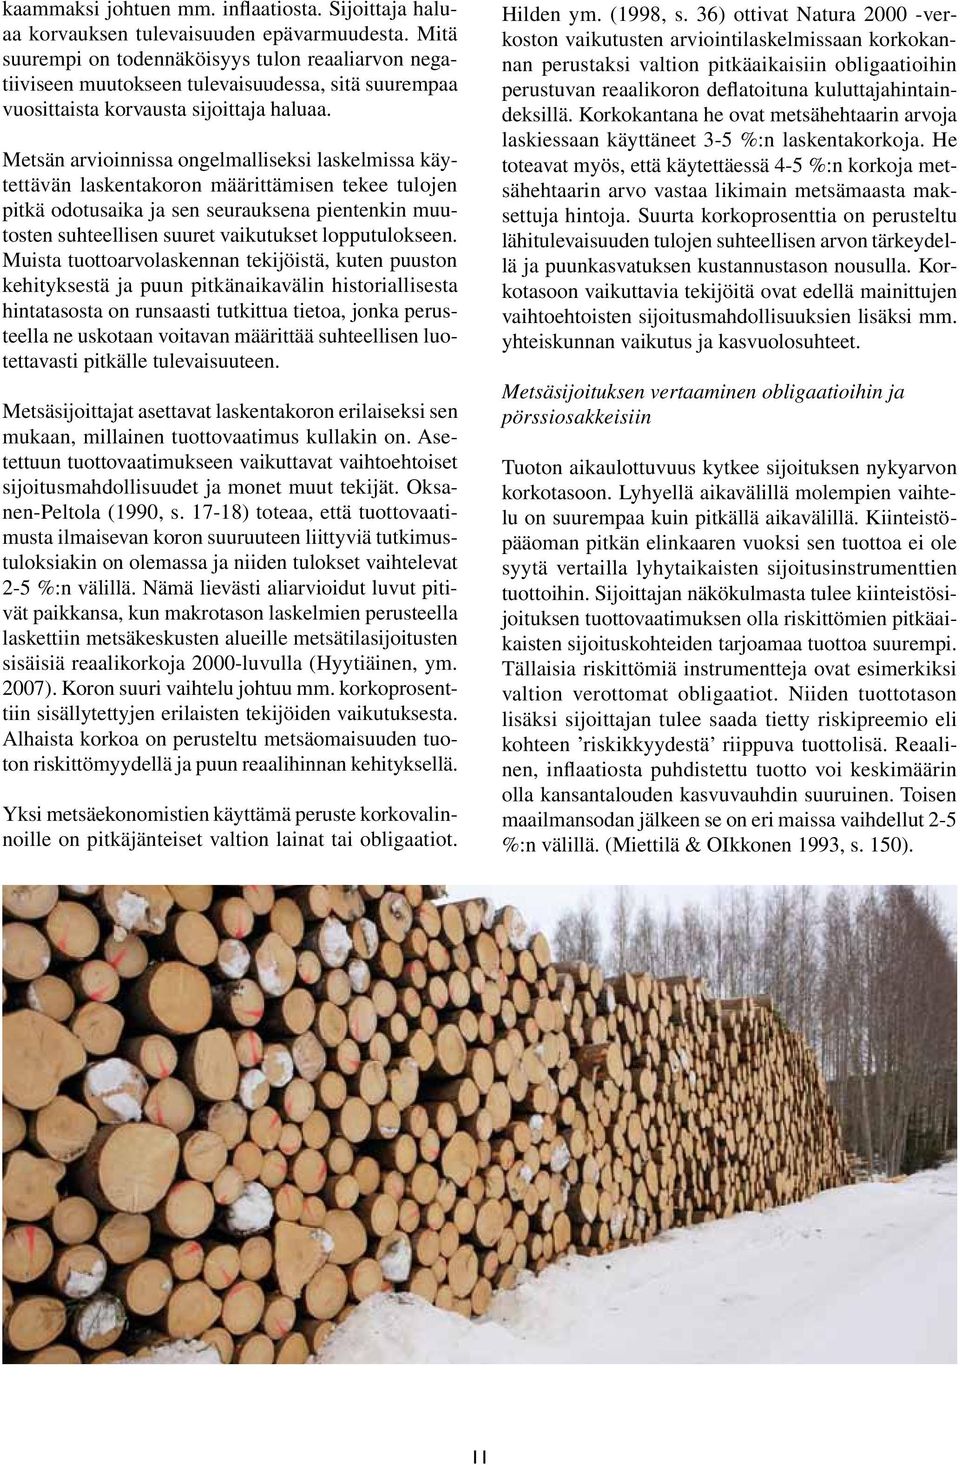 Metsän arvioinnissa ongelmalliseksi laskelmissa käytettävän laskentakoron määrittämisen tekee tulojen pitkä odotusaika ja sen seurauksena pientenkin muutosten suhteellisen suuret vaikutukset